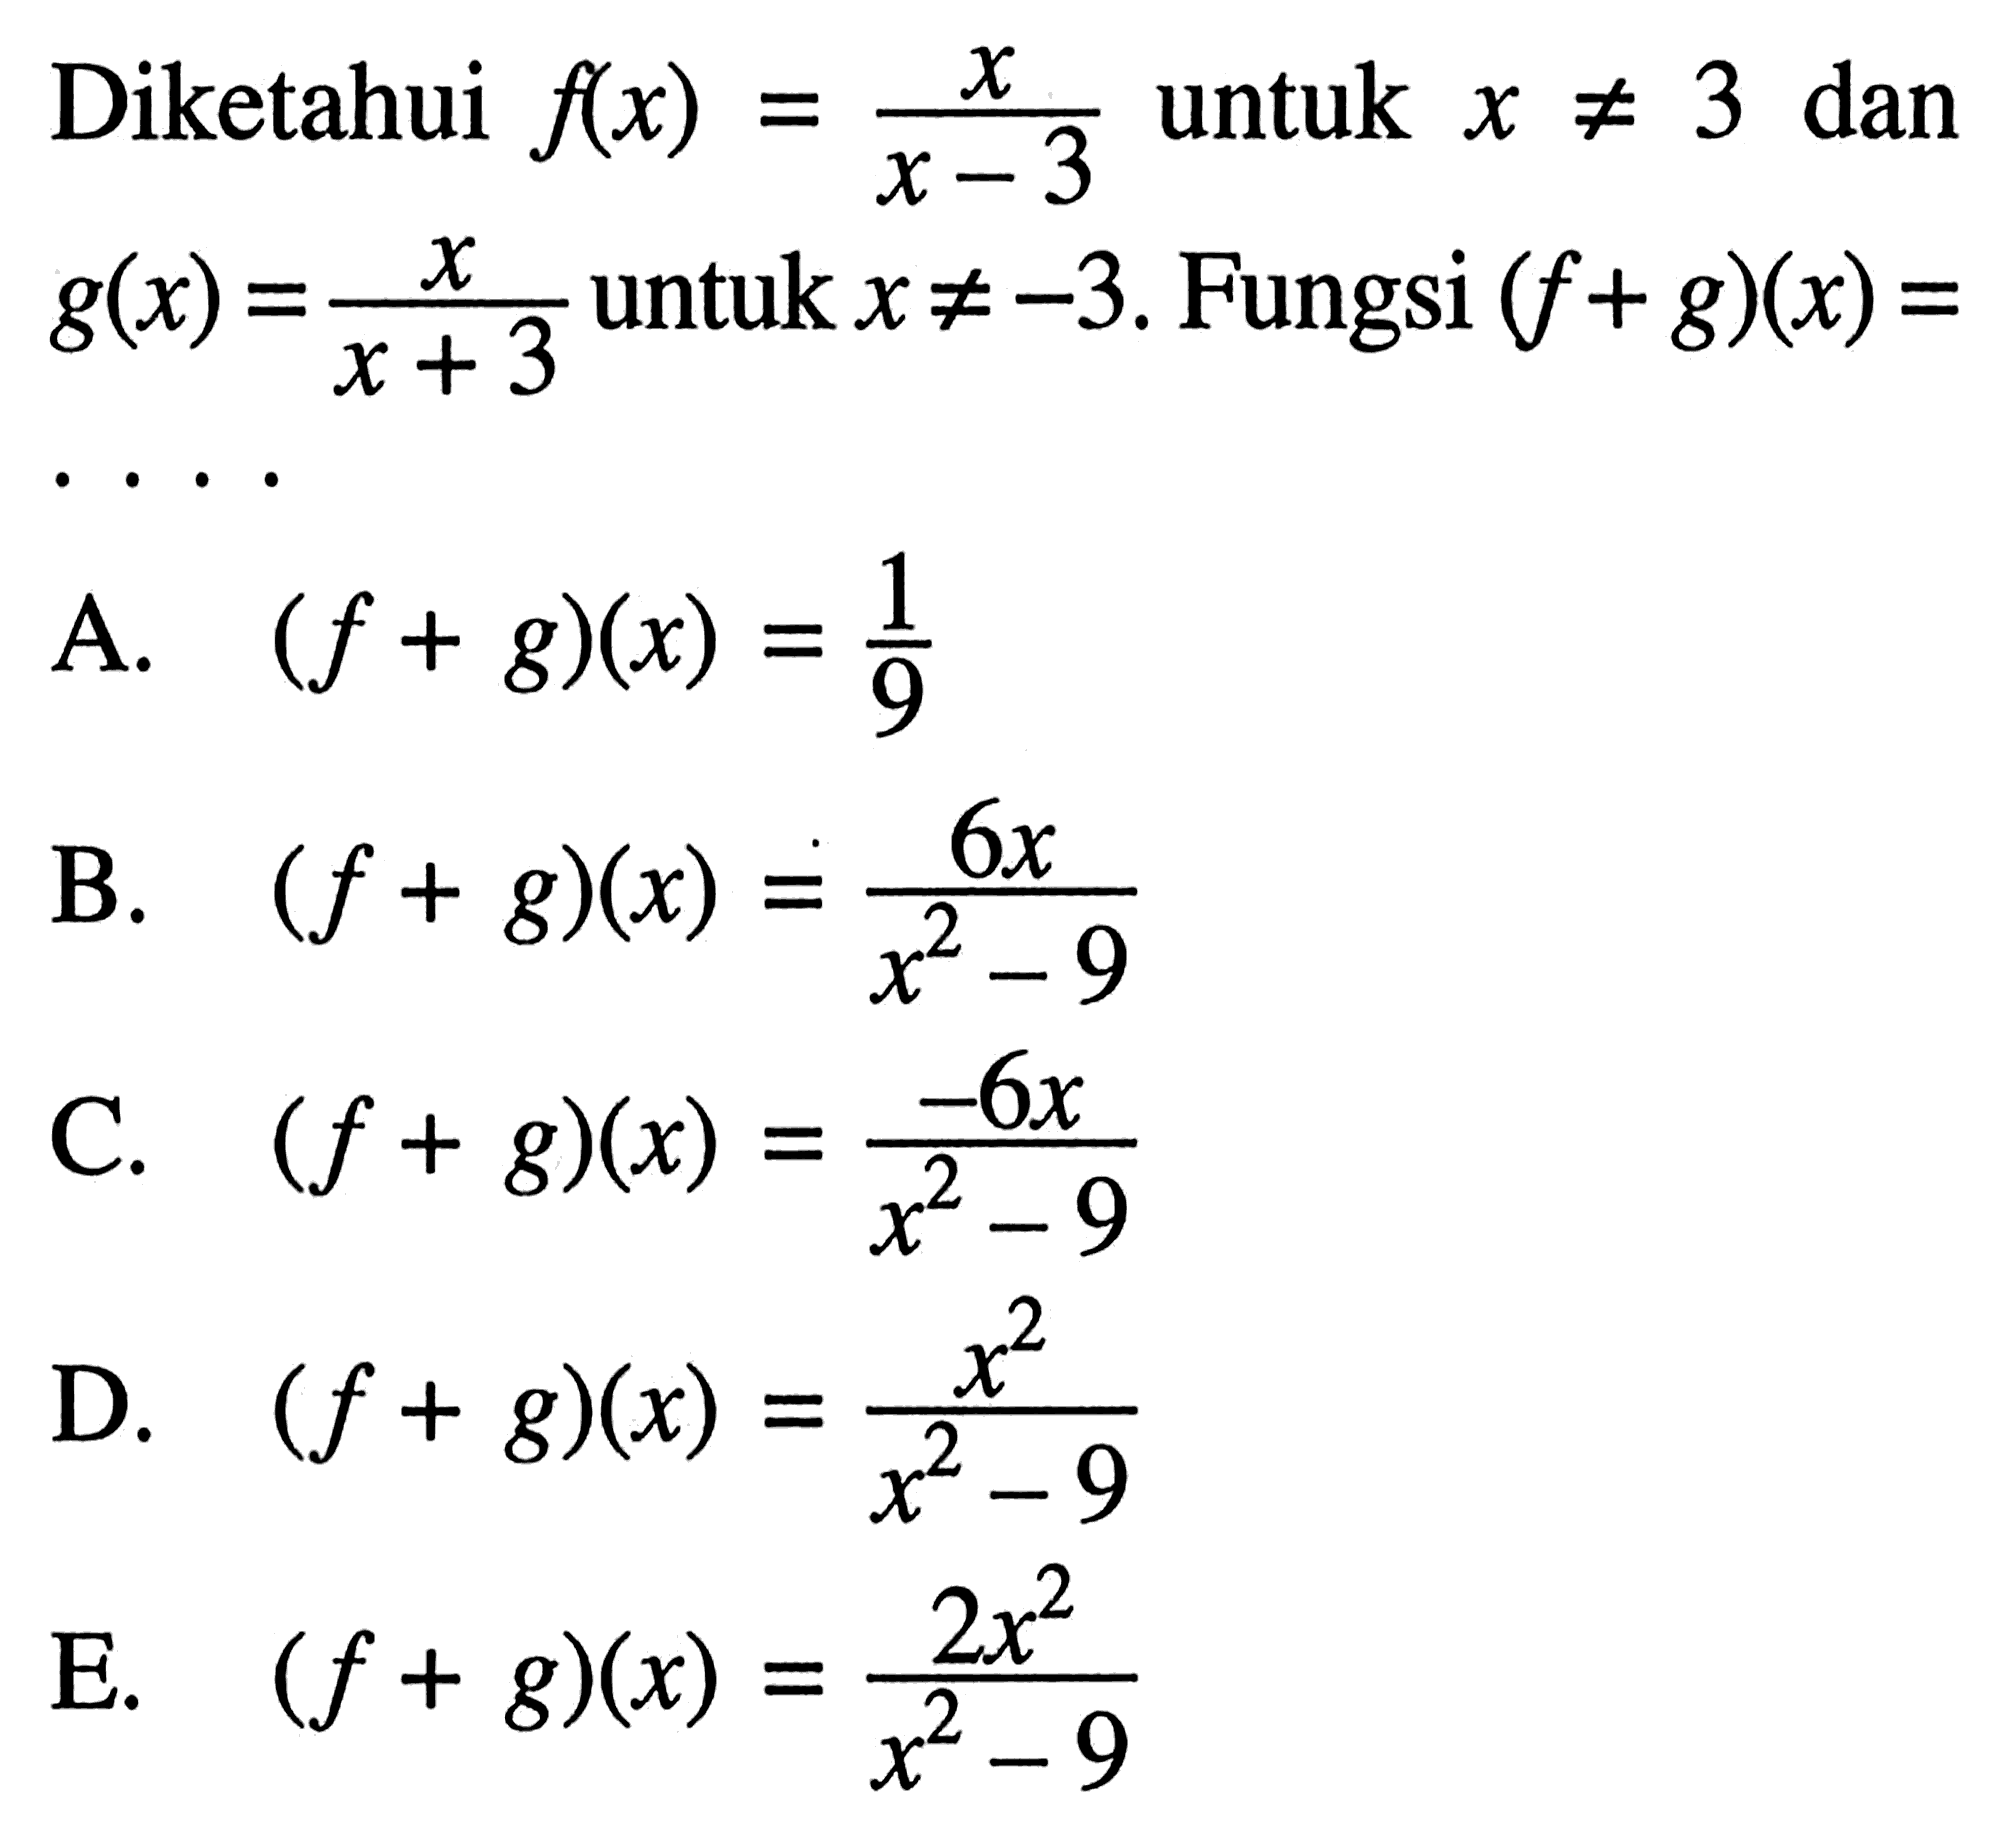 Diketahui  f(x)=x/(x-3)  untuk  x =/= 3  dan  g(x)=x/(x+3)  untuk  x =/=-3 . Fungsi  (f+g)(x)= 